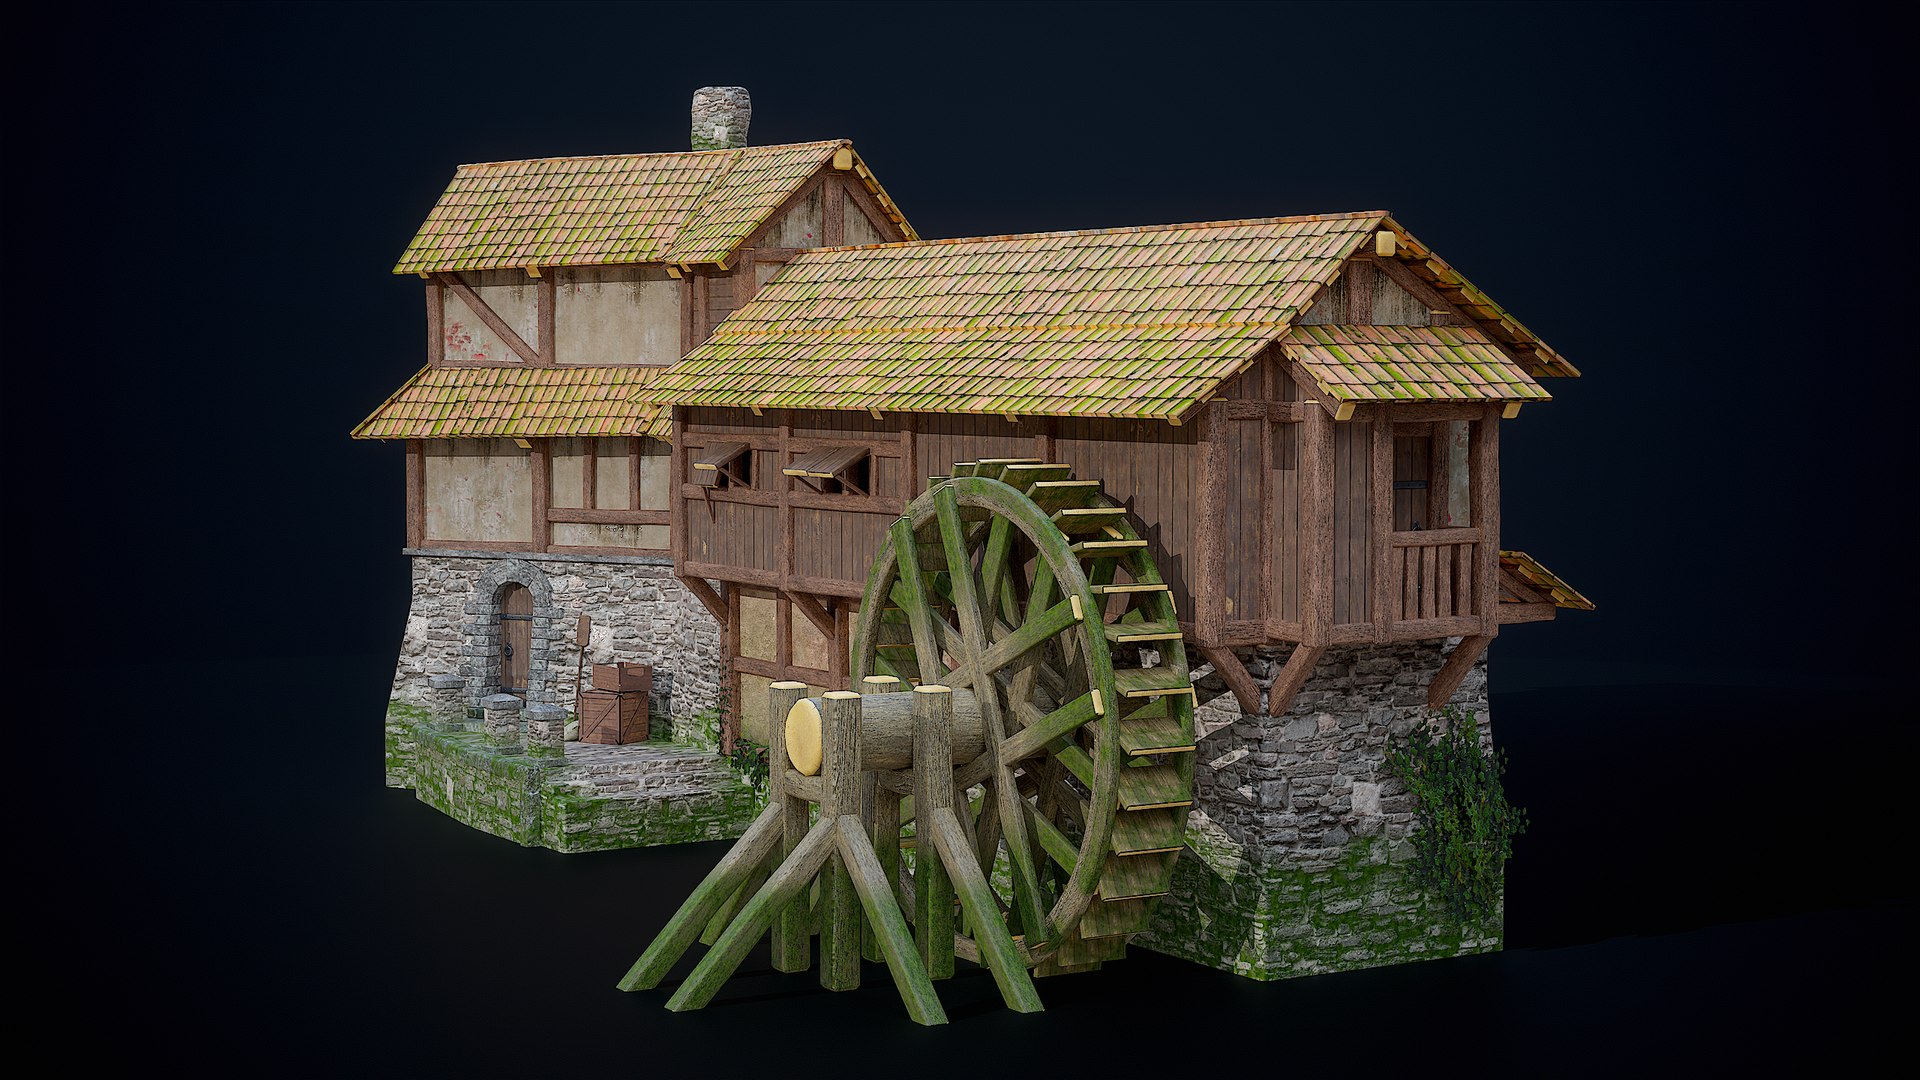 Minecraft Medieval Building Pack 3D Model $10 - .blend .obj .fbx